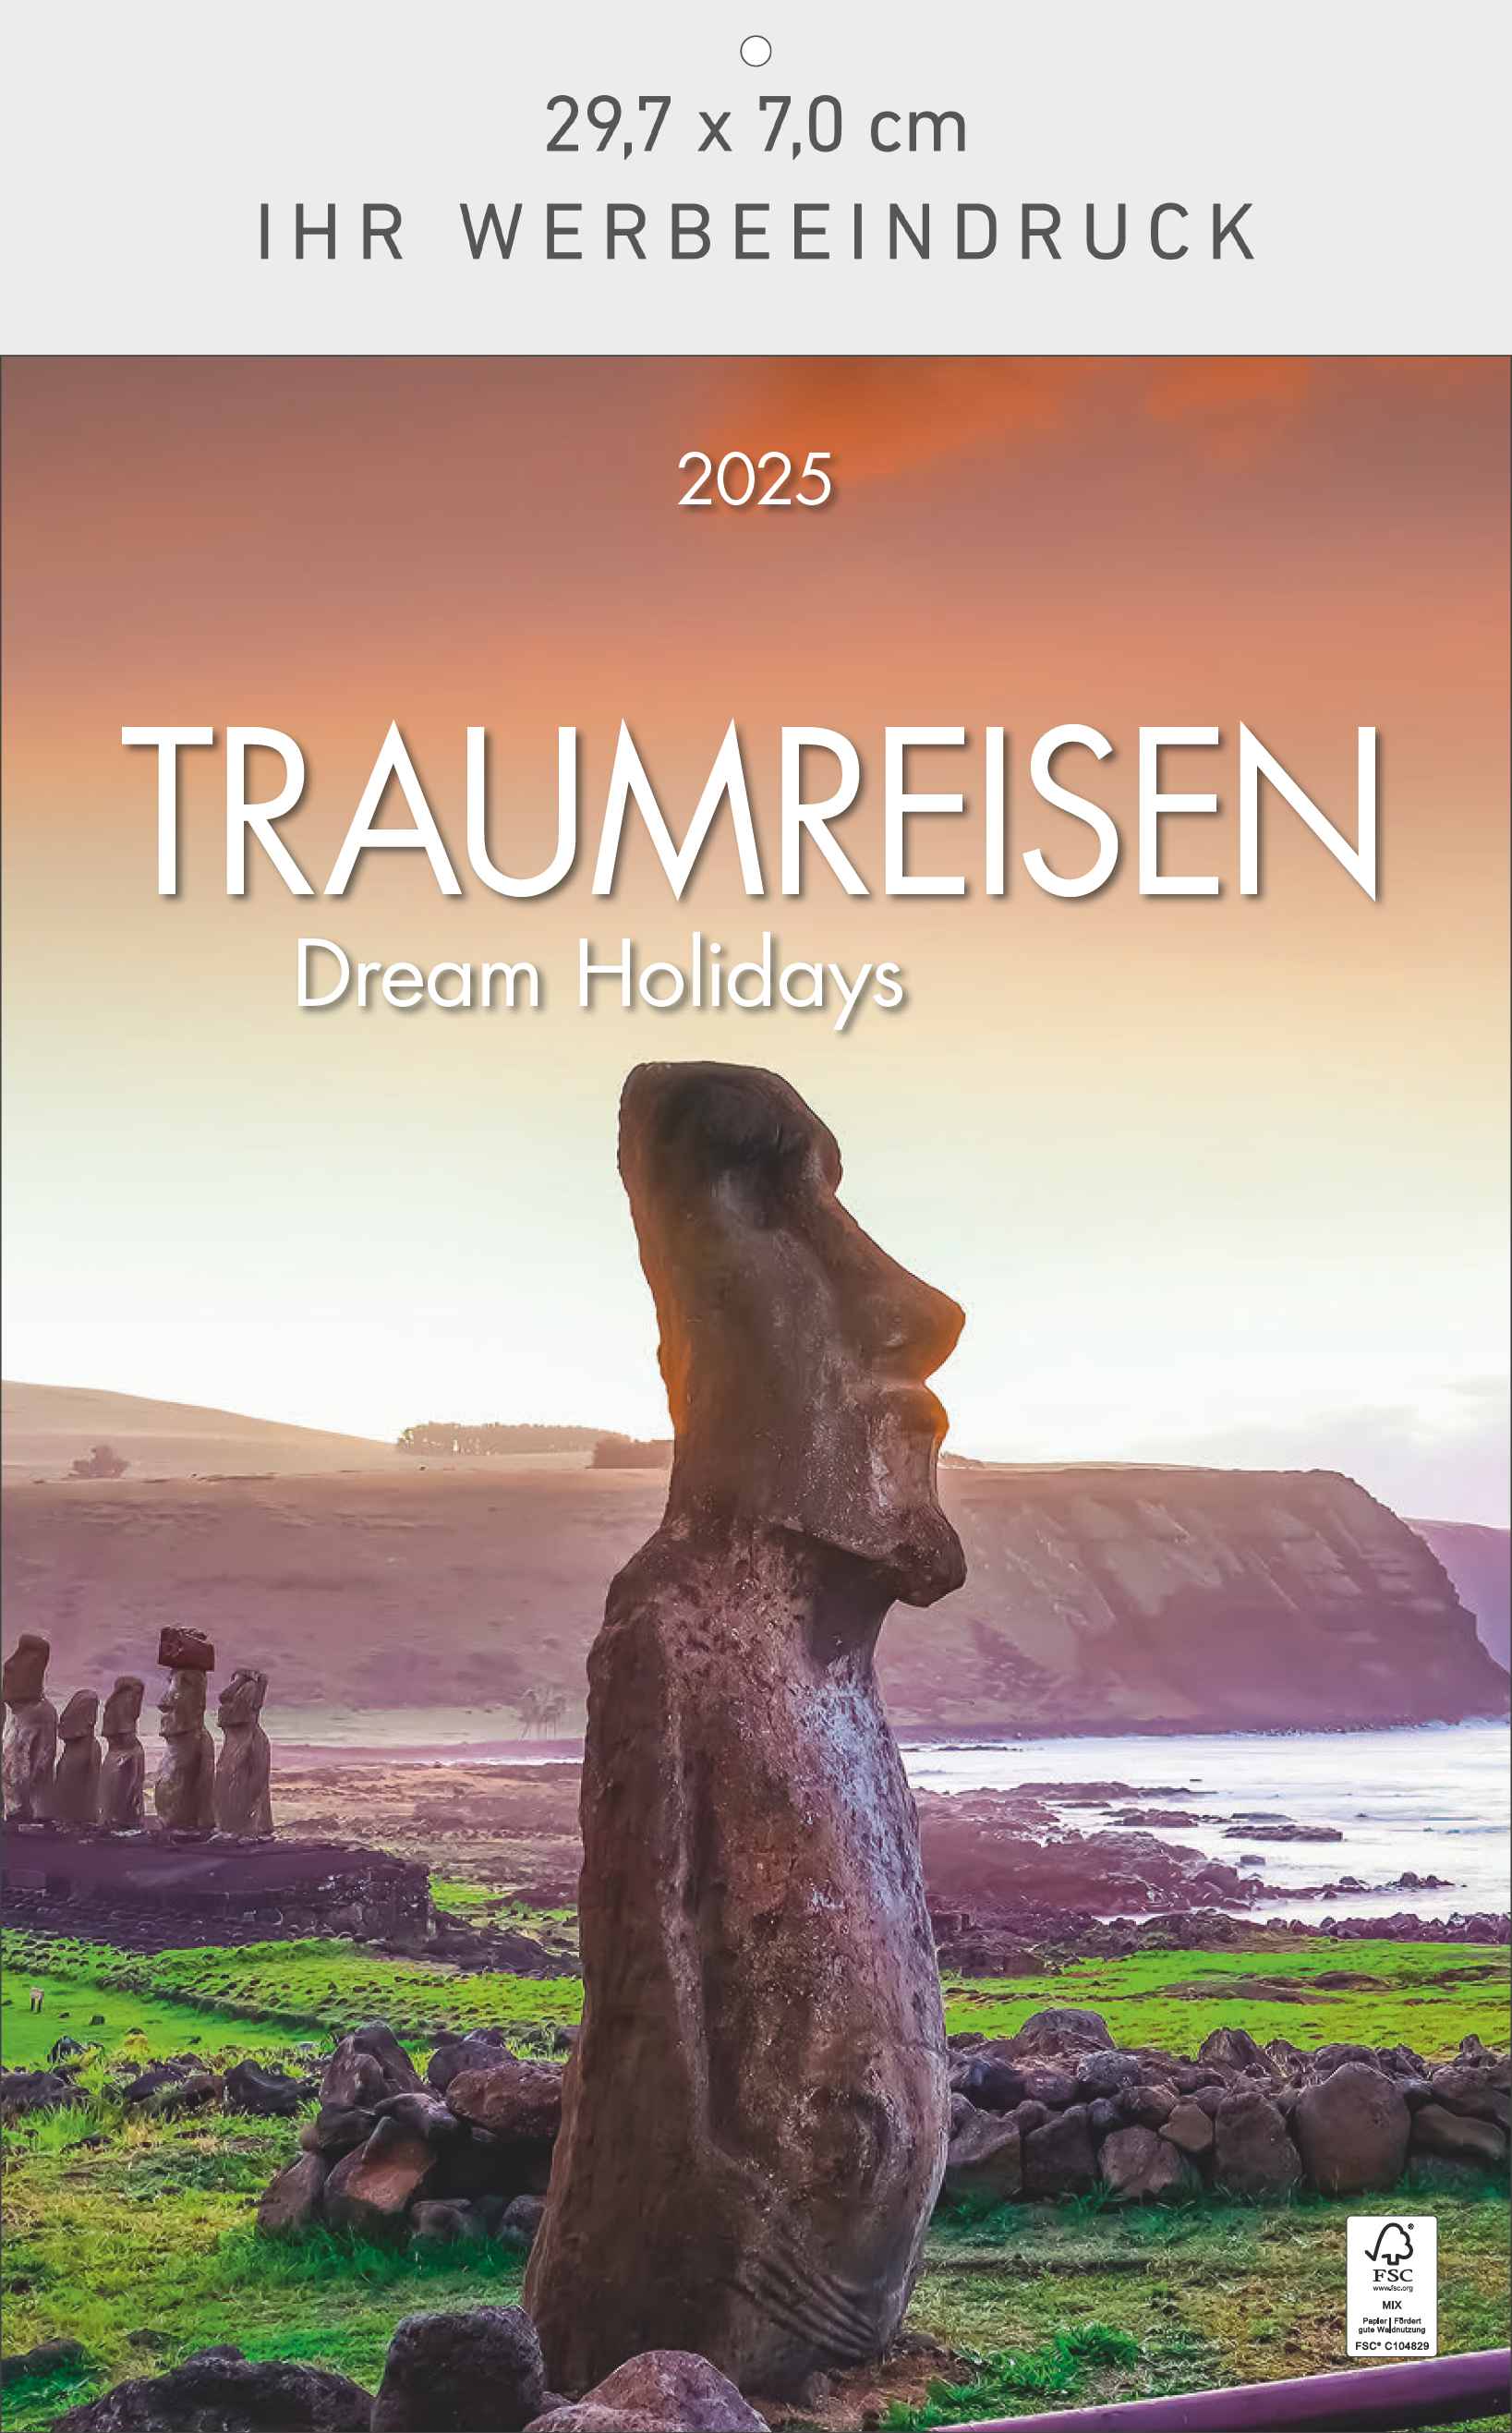 Traumreisen - Dream Holidays